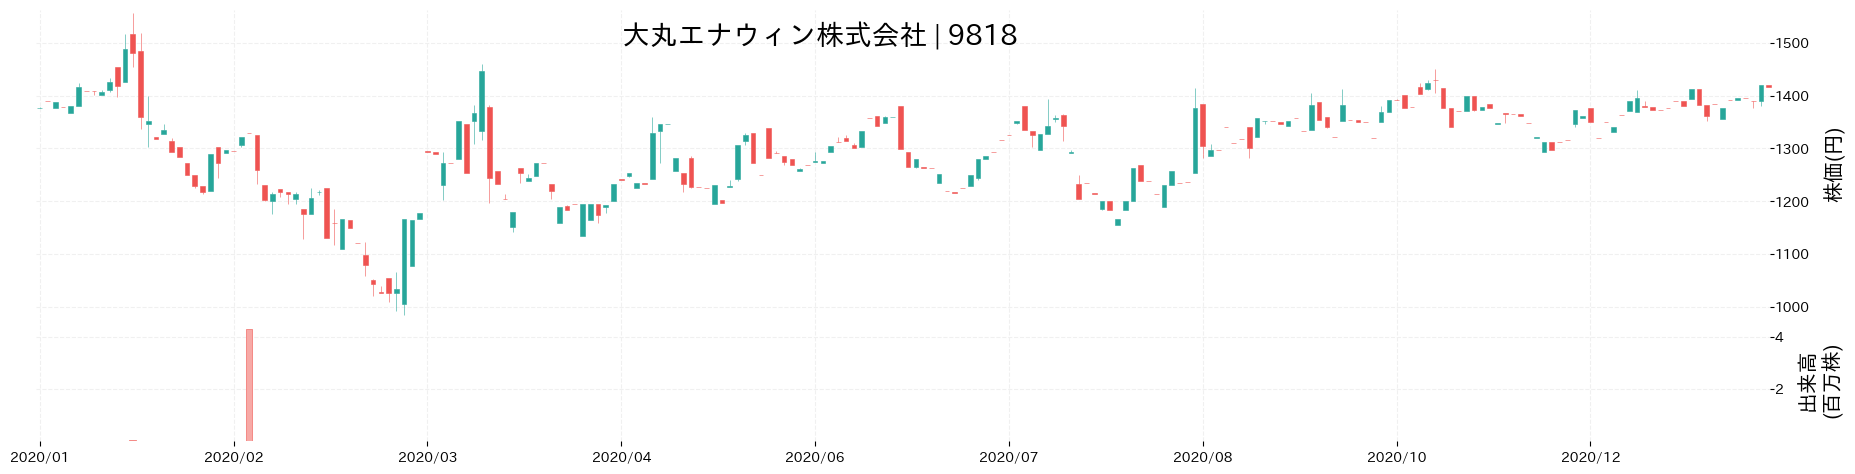 大丸エナウィンの株価推移(2020)